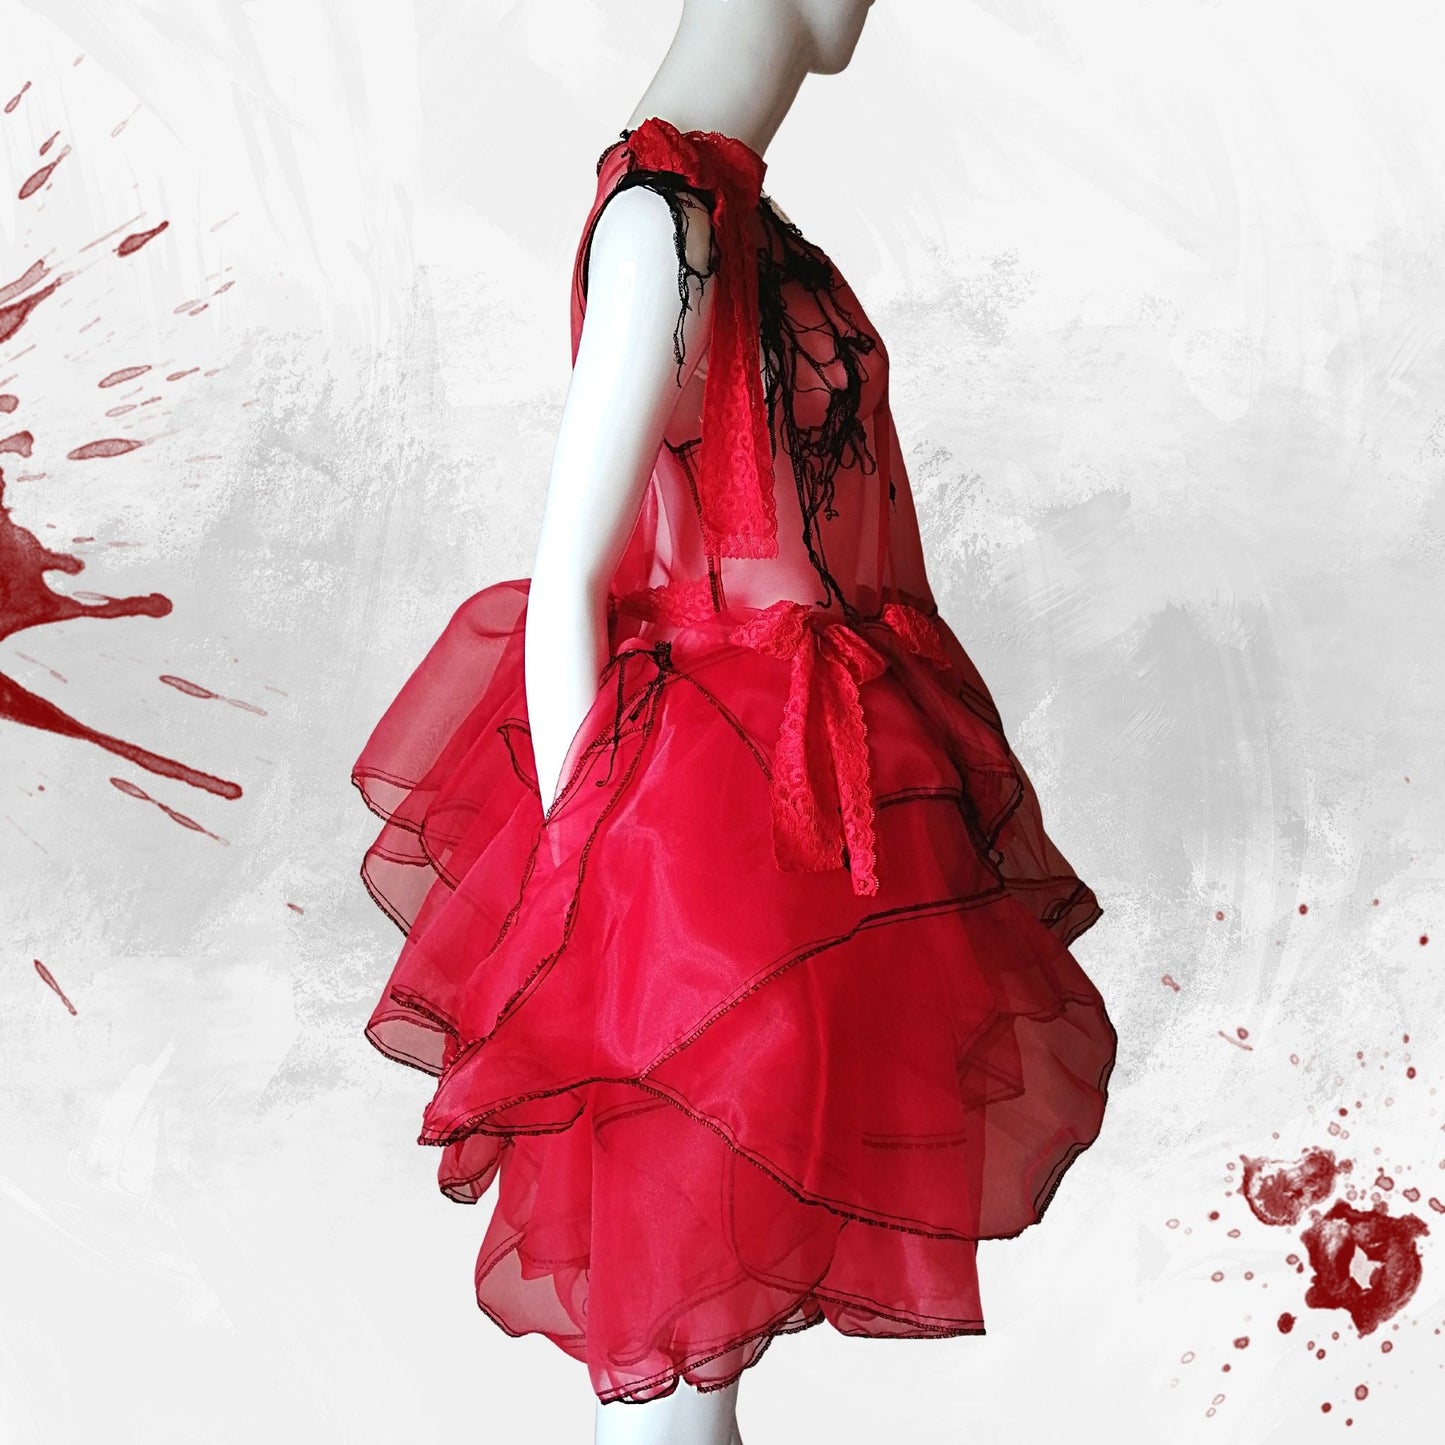 Tokyo Gothic Lolita Fashion durchsichtiges rotes Kleid handgefertigt